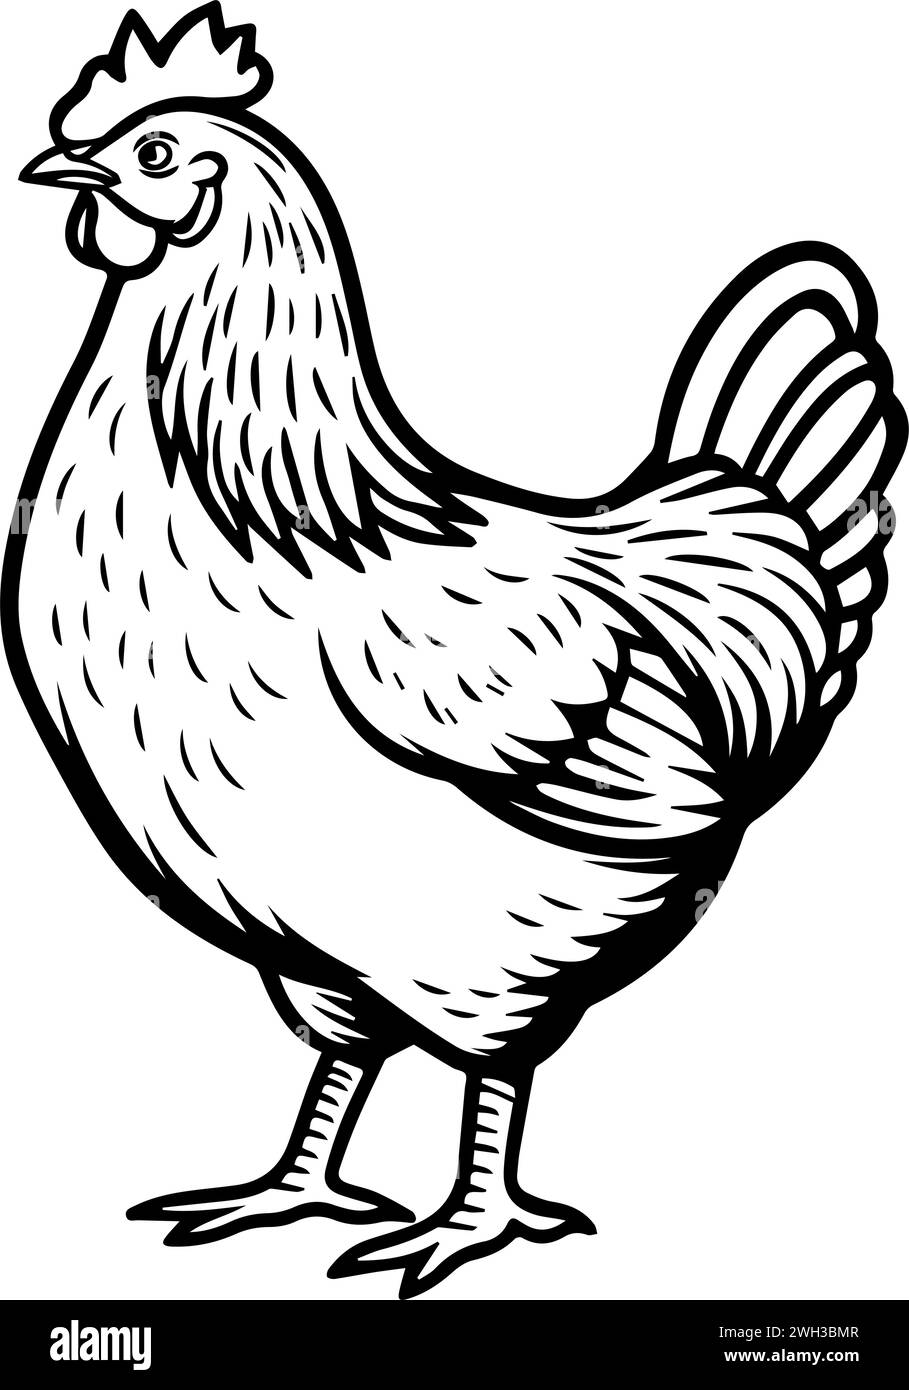 Eine Linie mit schwarzer und weißer Tinte, die ein dickes Huhn zeigt Stock Vektor